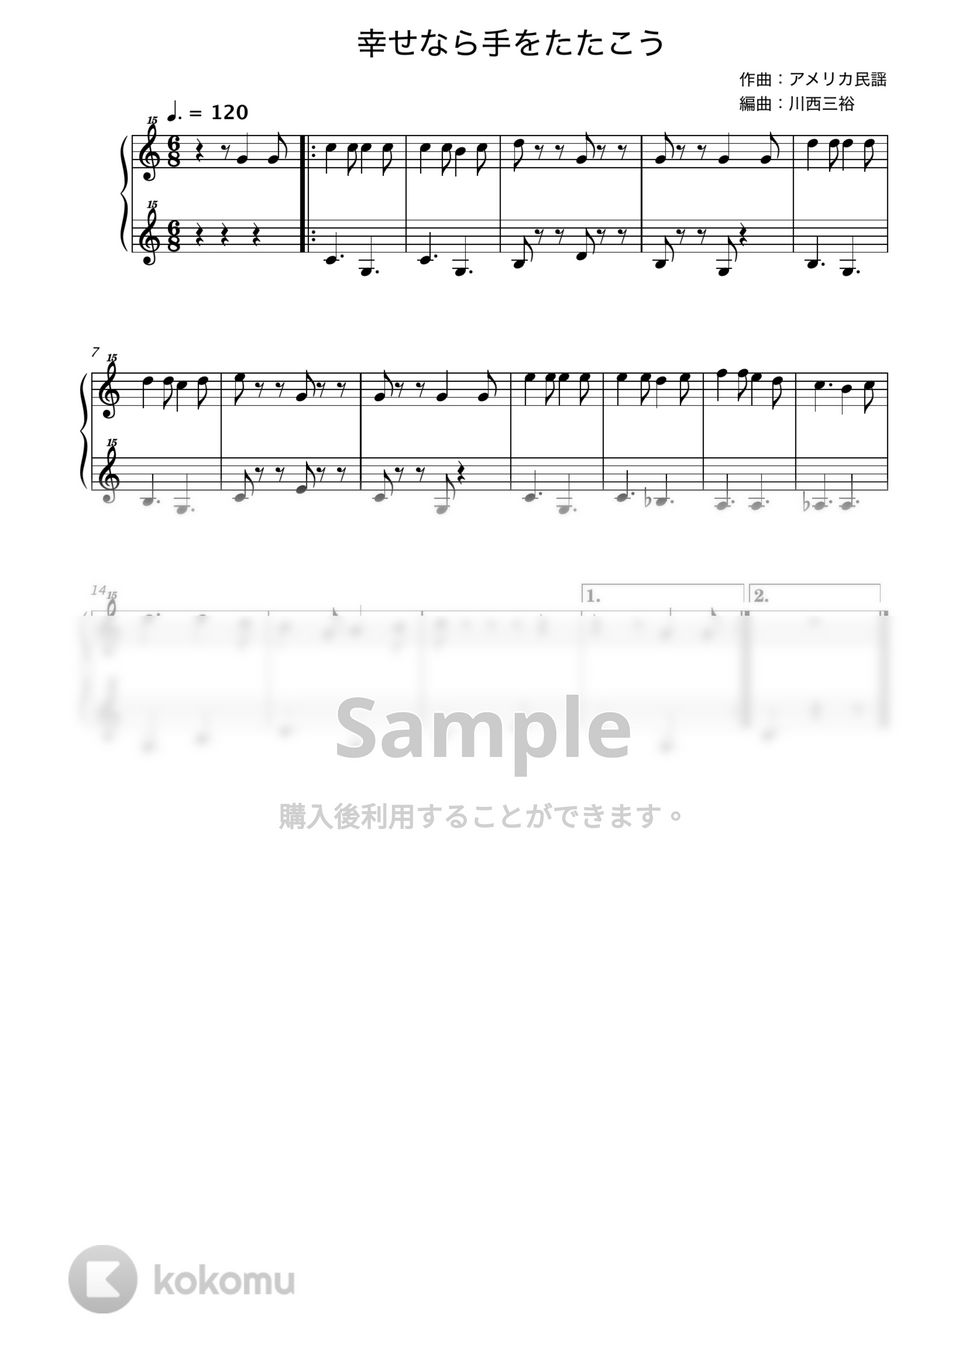 幸せなら手をたたこう (トイピアノ / 25鍵盤 / 童謡) by 川西三裕